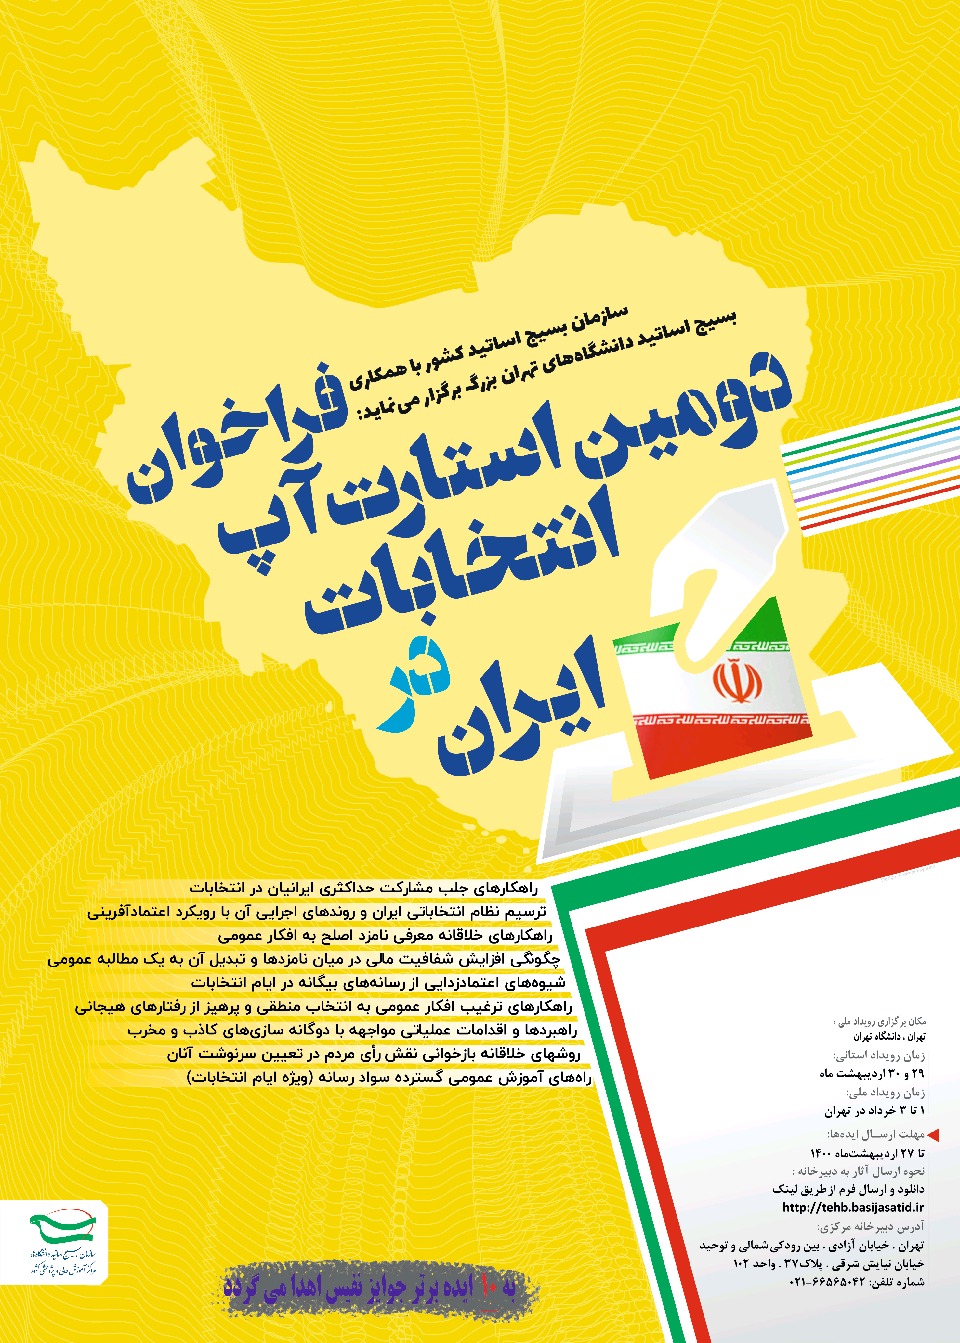 فراخوان دومین استارت آپ انتخابات در ایران